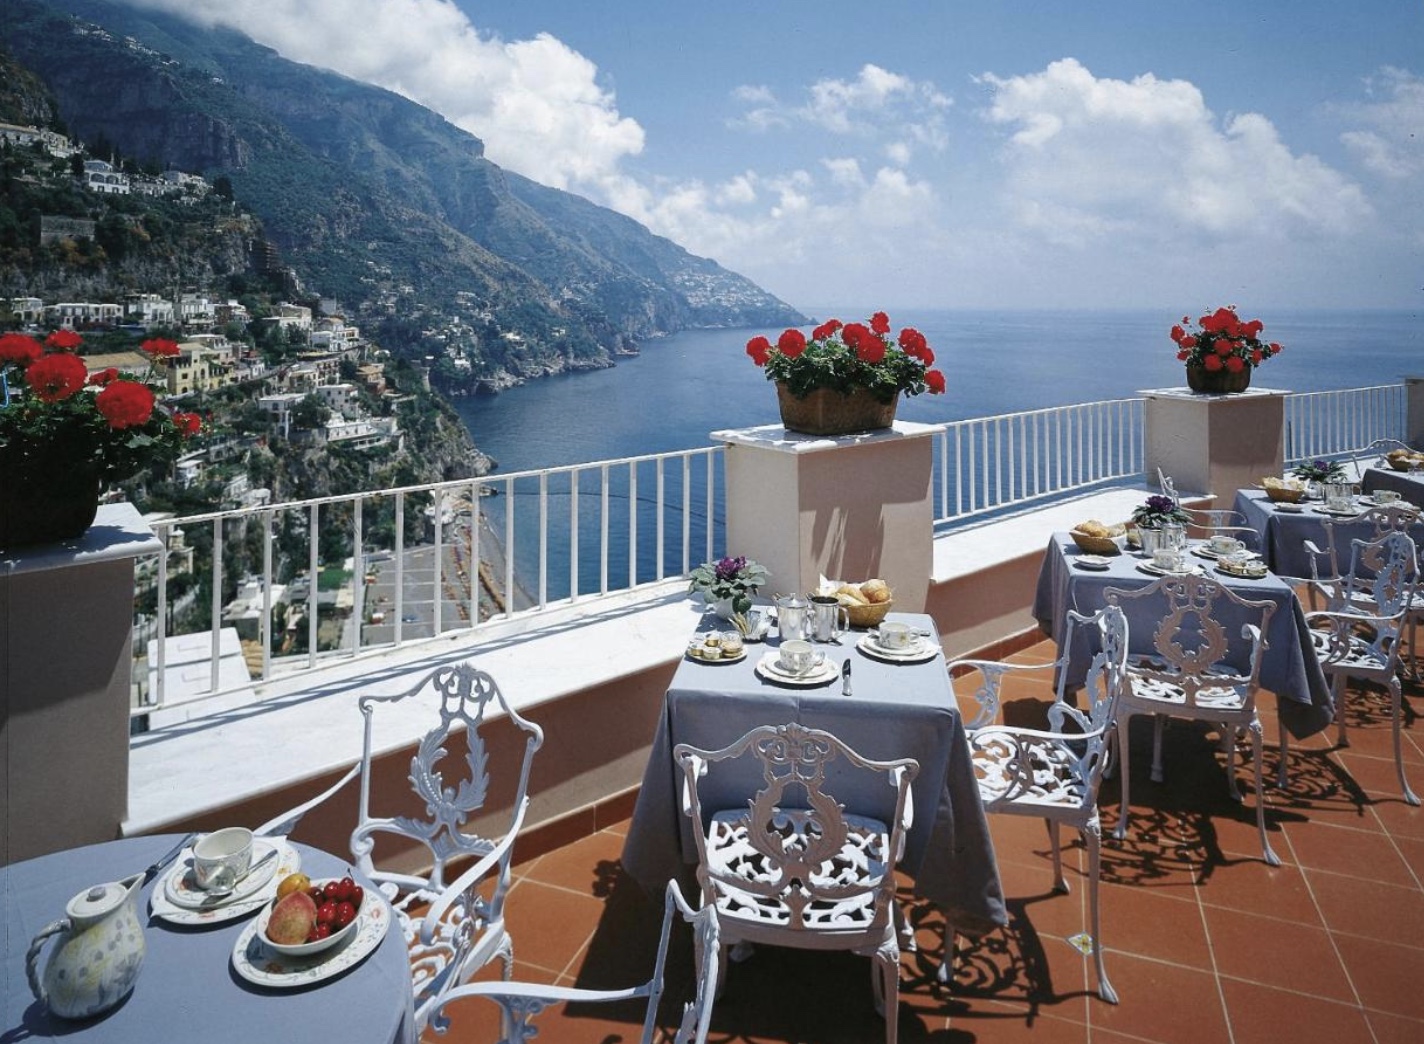 Best Hotels in Positano